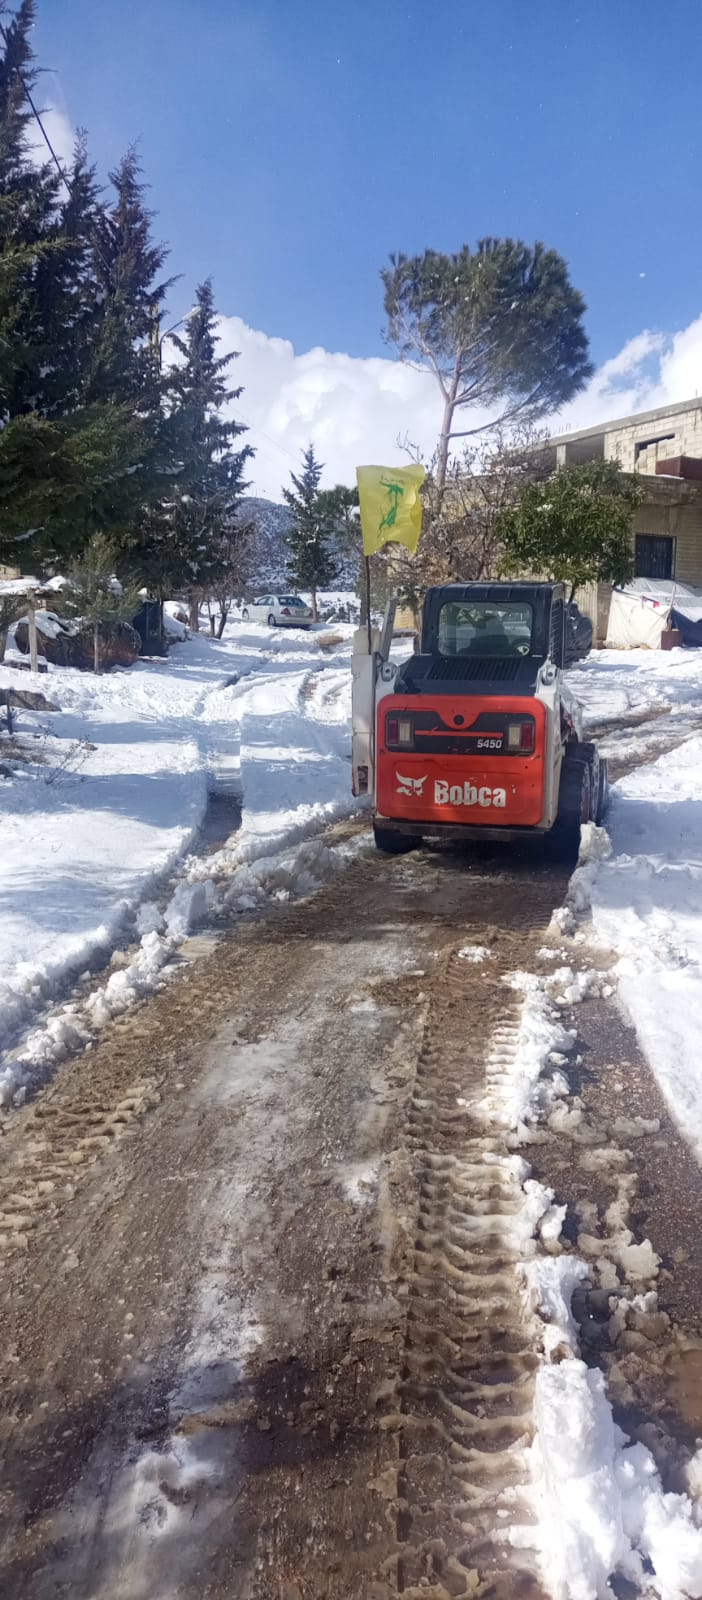 لبنان: حزب الله يواصل فتح الطرقات المقطوعة بسبب تراكم الثلوج